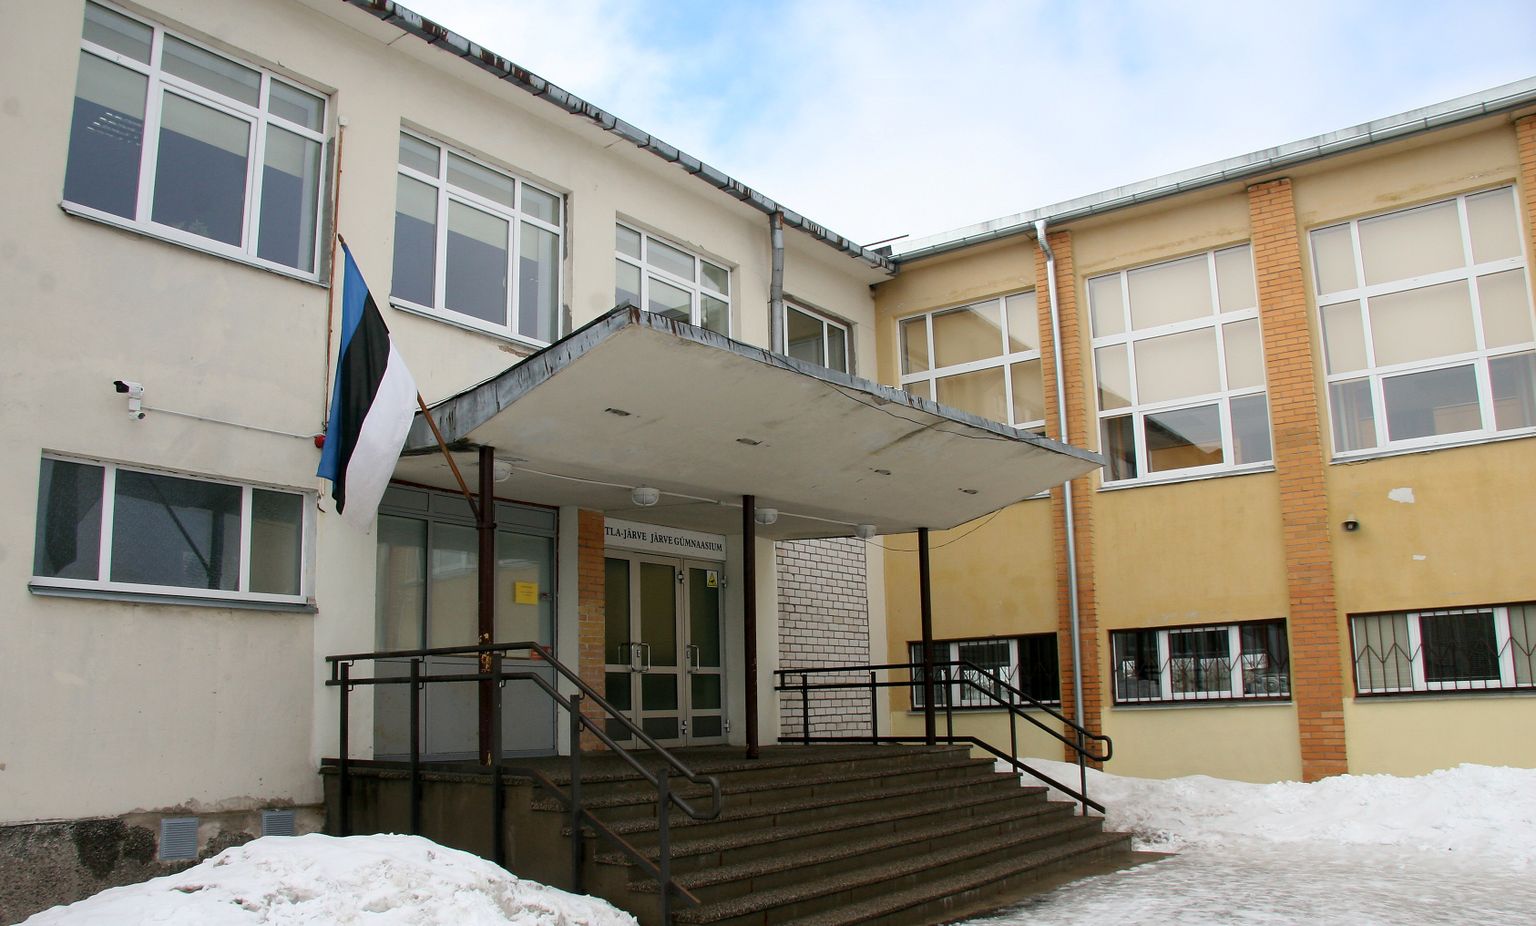 Kohtla-Järve Järve Järve gümnaasium, mis on varem olnud ka Kohtla-Järve 1. Keskkool, hakkab alates 1. septembrist kandma nime Kohtla-Järve Järve Kool.